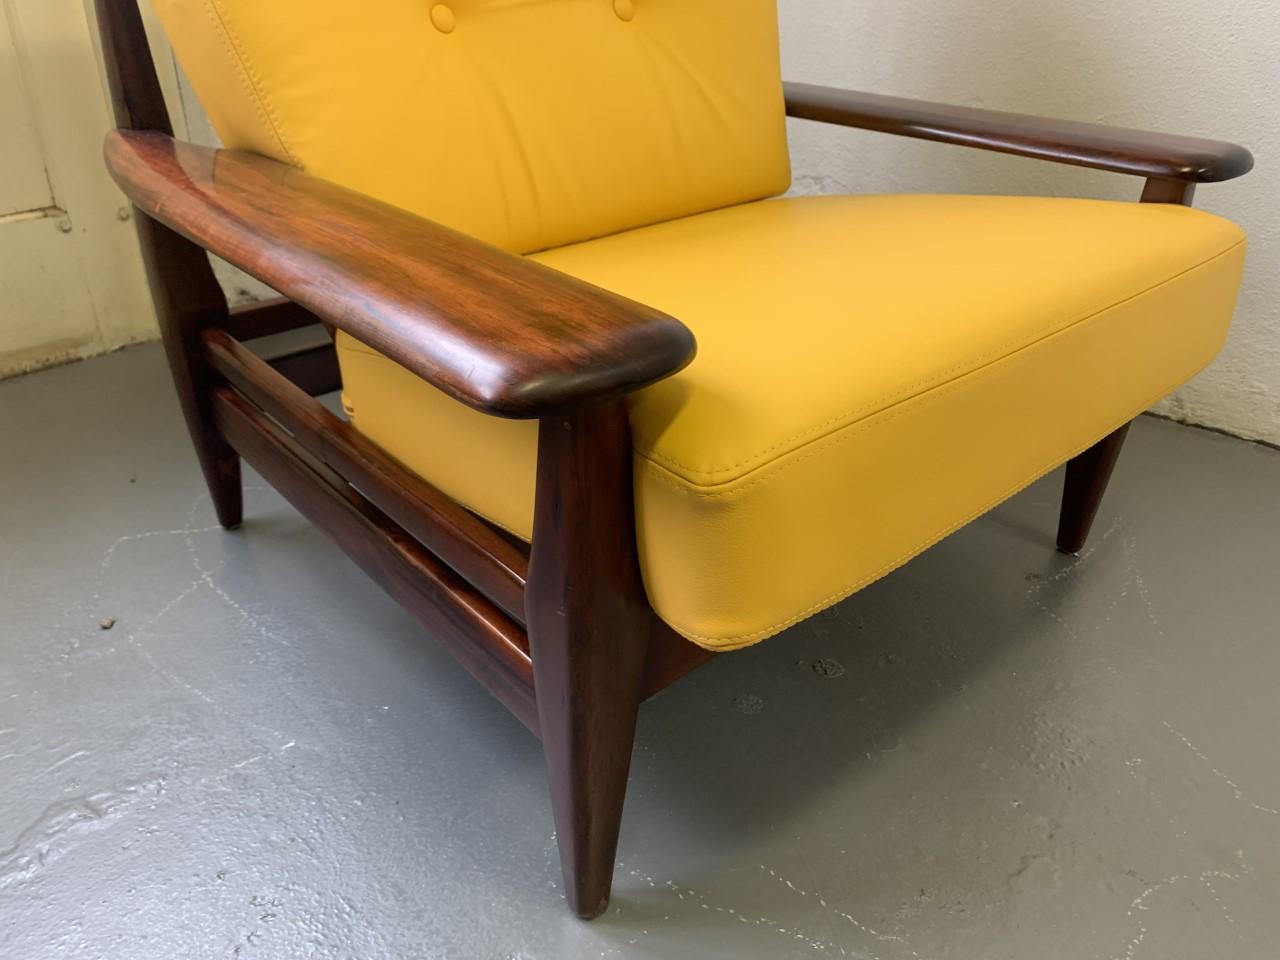 Großer brutalistischer Lounge-Sessel des brasilianischen Designers Jean Gillon aus den 1960er Jahren
In einem sehr schönen Vintage-Zustand.
Neue Lederpolster in Premiumqualität, in typisch brasilianischem Deep Yellow.

In den 1960er und 1970er